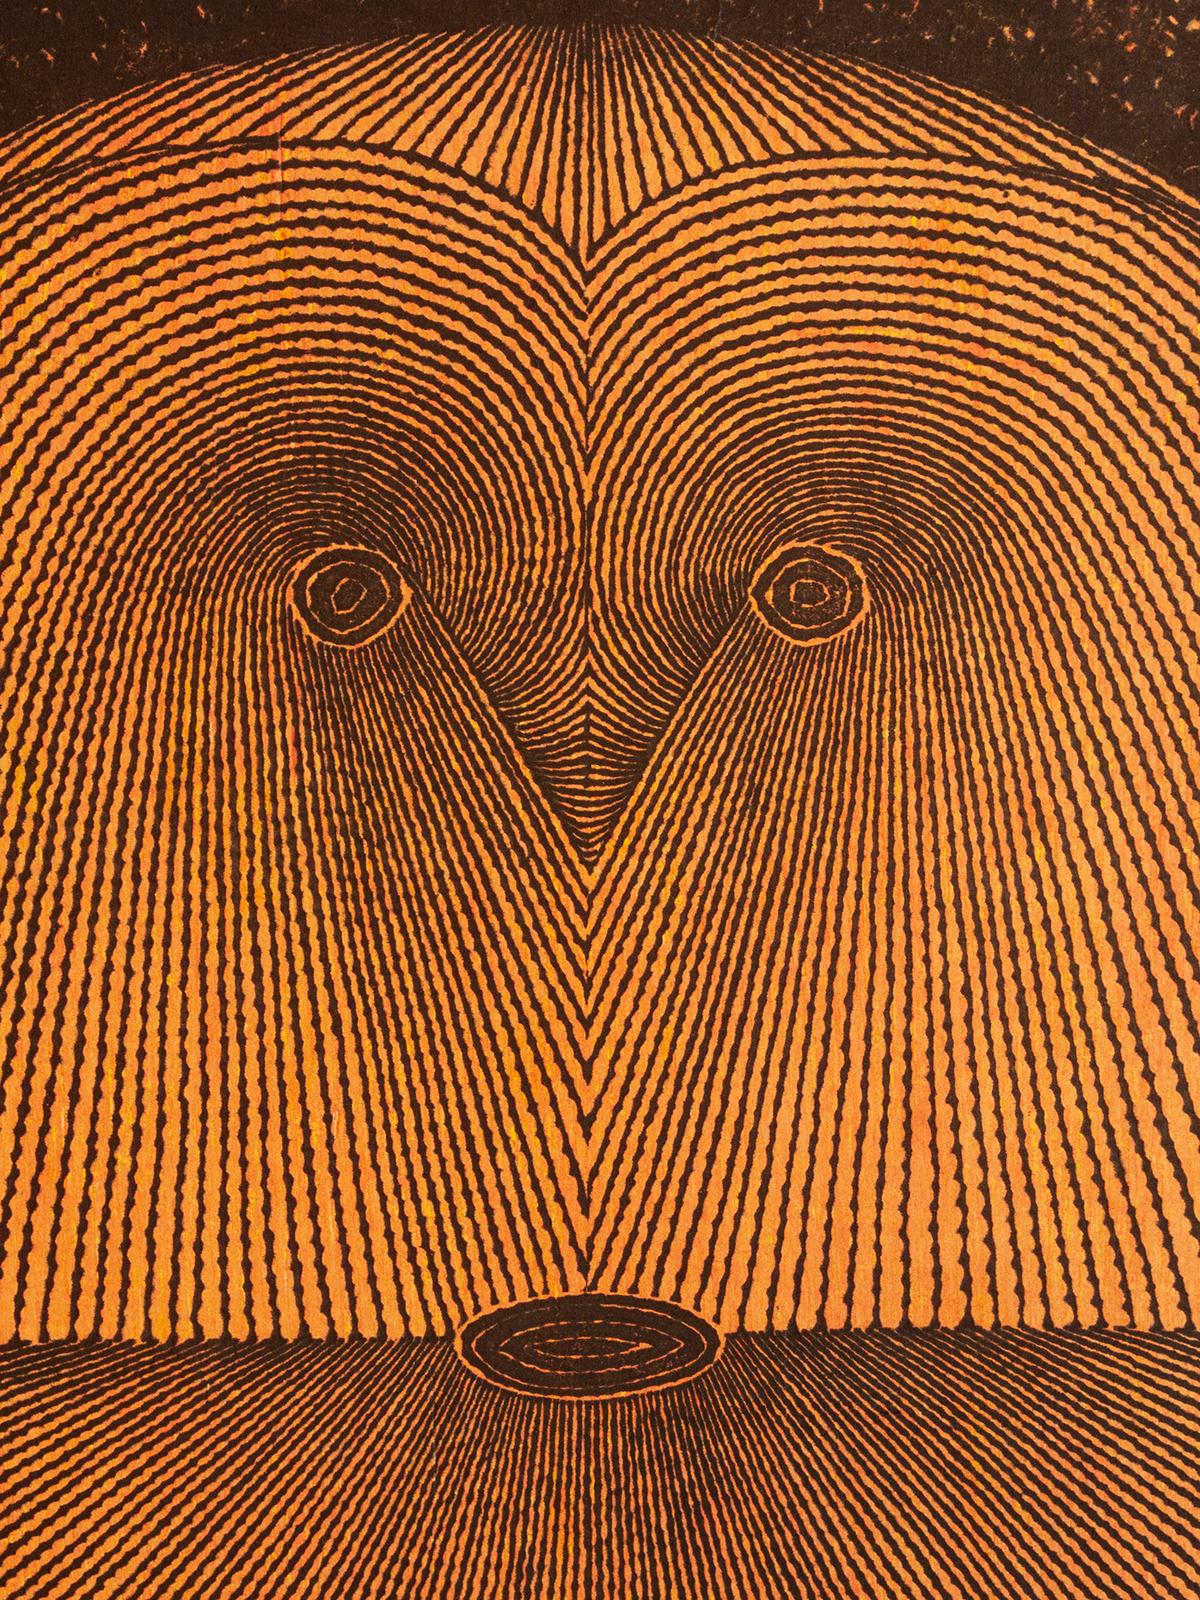 Tomio Kinoshita (1923 - 2014)
Gesicht (Schwarz), 1965
Farbholzschnitt
Bildgröße: 25 hoch x 18 Zoll breit (63,5 x 45,7 cm)
Papierformat: 26,25 hoch x 19 Zoll breit (66,7 x 48,2 cm)
Vorzeichenlos
Zustand: einige Falten in den Rändern

Dieser Druck